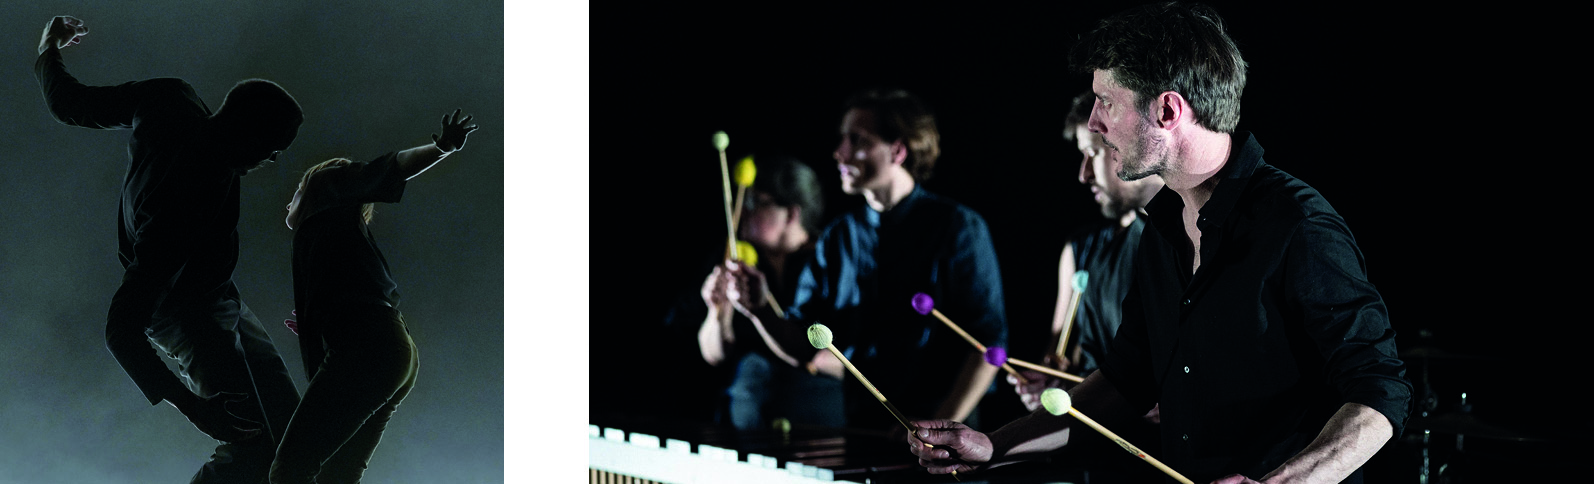 La Vouivre © Emile Zeizig / Les Percussions Claviers de Lyon © Julie Cherki